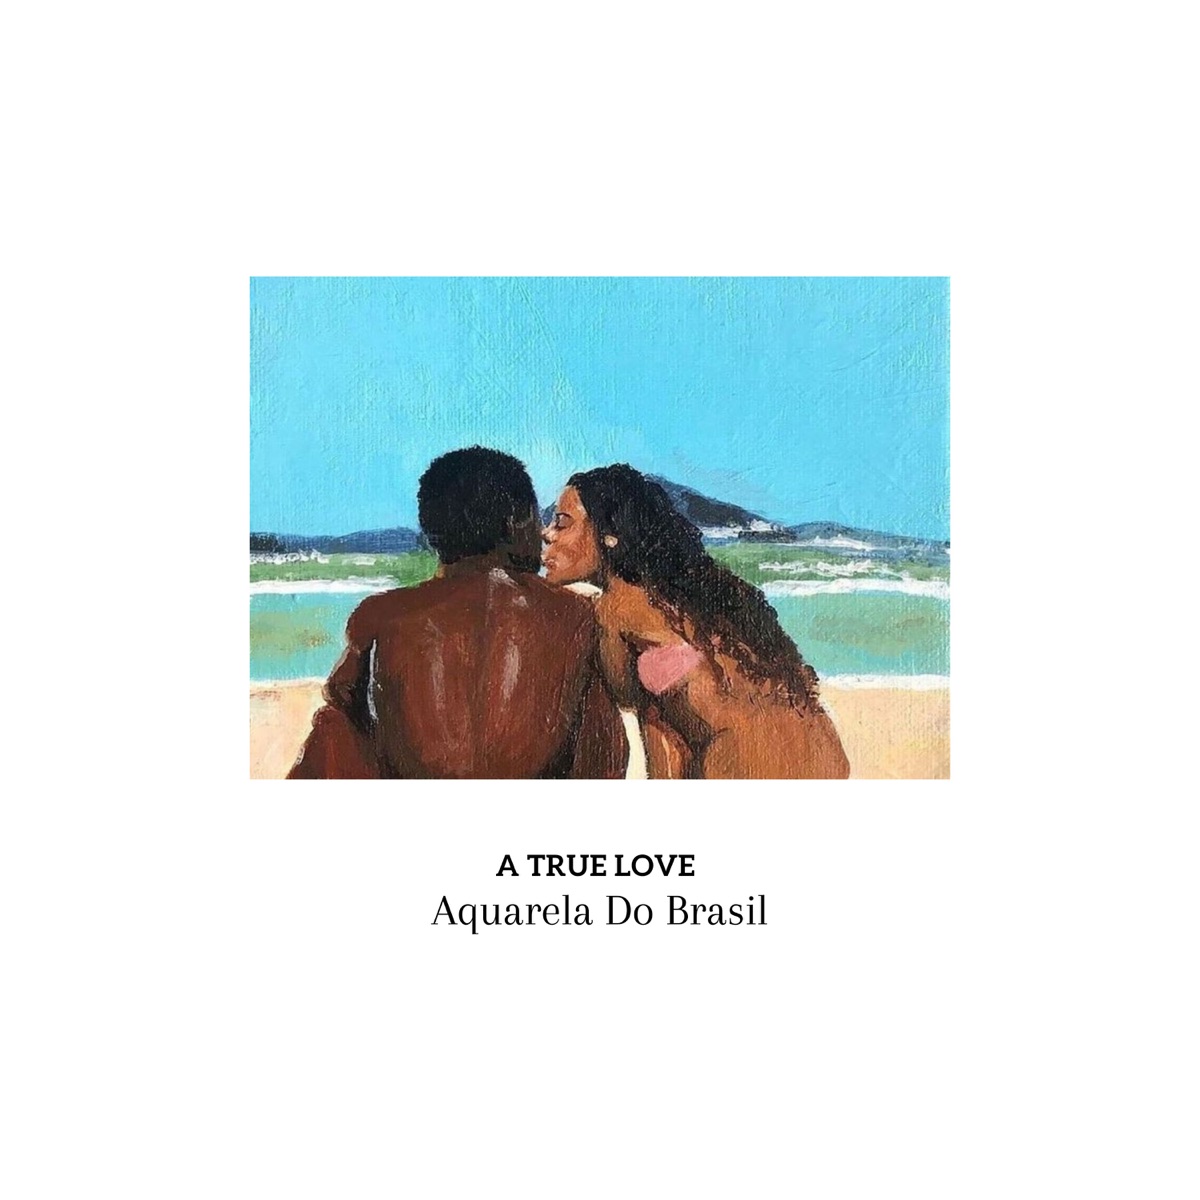 A True Love - Single - Album by Aquarela do Brasil, Conexao Tupi